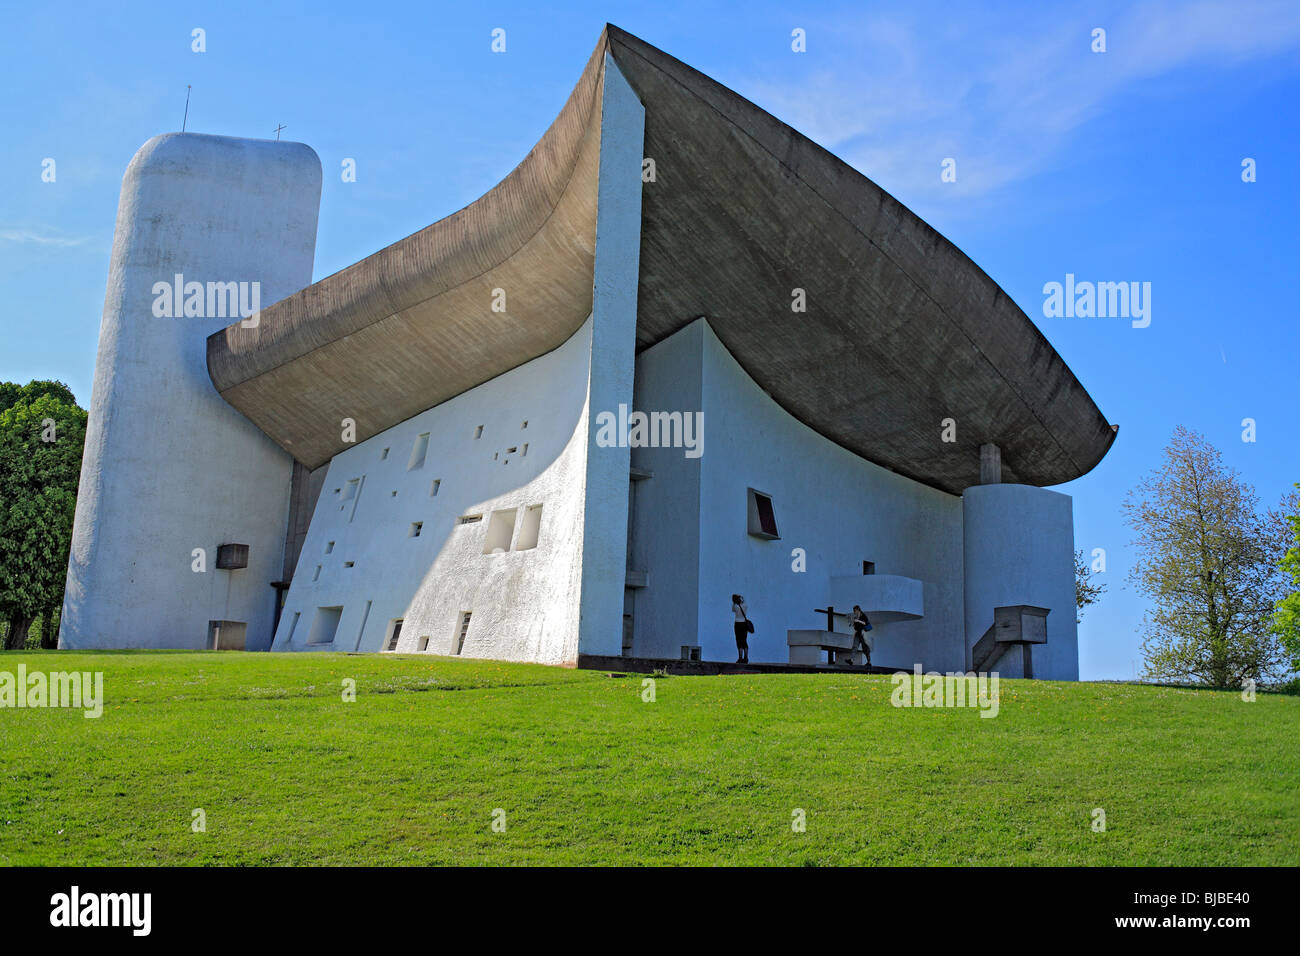 Chapelle Notre Dame du haut (architecte Le Corbusier, 1954), Ronchamp, Franche-Comté, France Banque D'Images